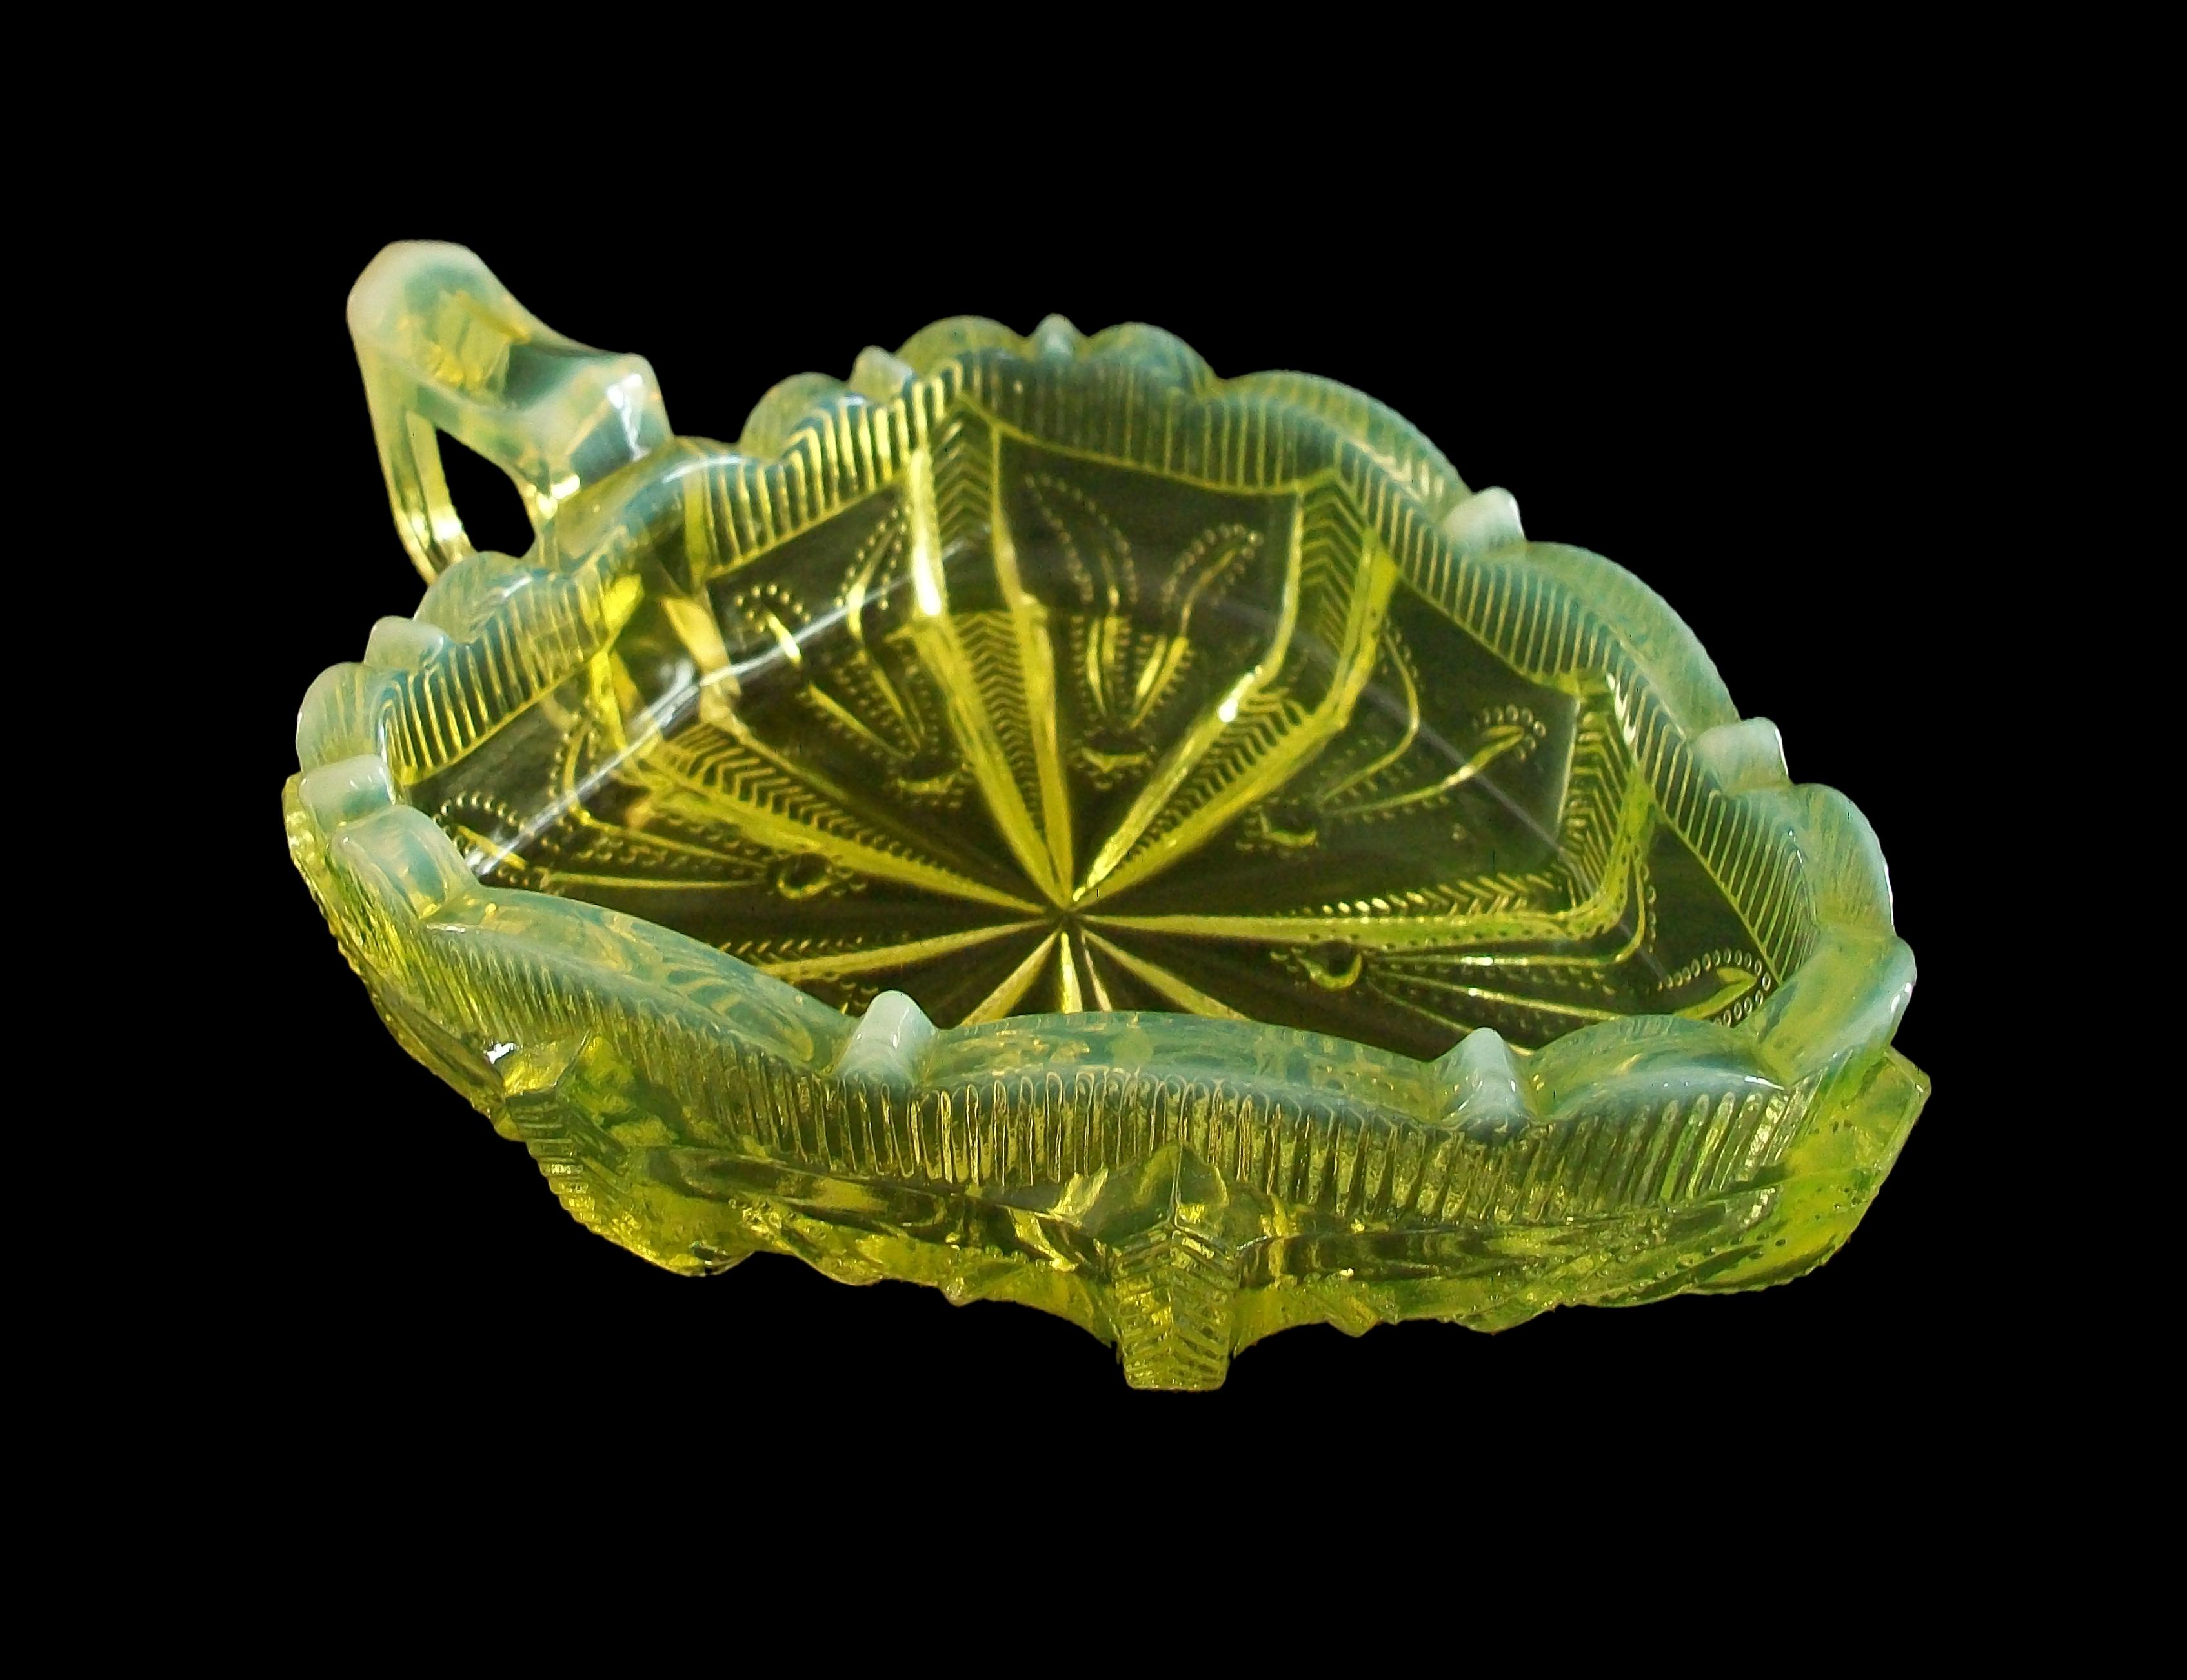 Fenton - Antike amerikanische opalisierende gelbe Vaseline Glas Kaktusblatt Relish oder Gurkenschale - unsigniert - Vereinigte Staaten - frühes 20 Jahrhundert.

Ausgezeichneter antiker Zustand - kein Verlust - keine Beschädigung - keine Risse -